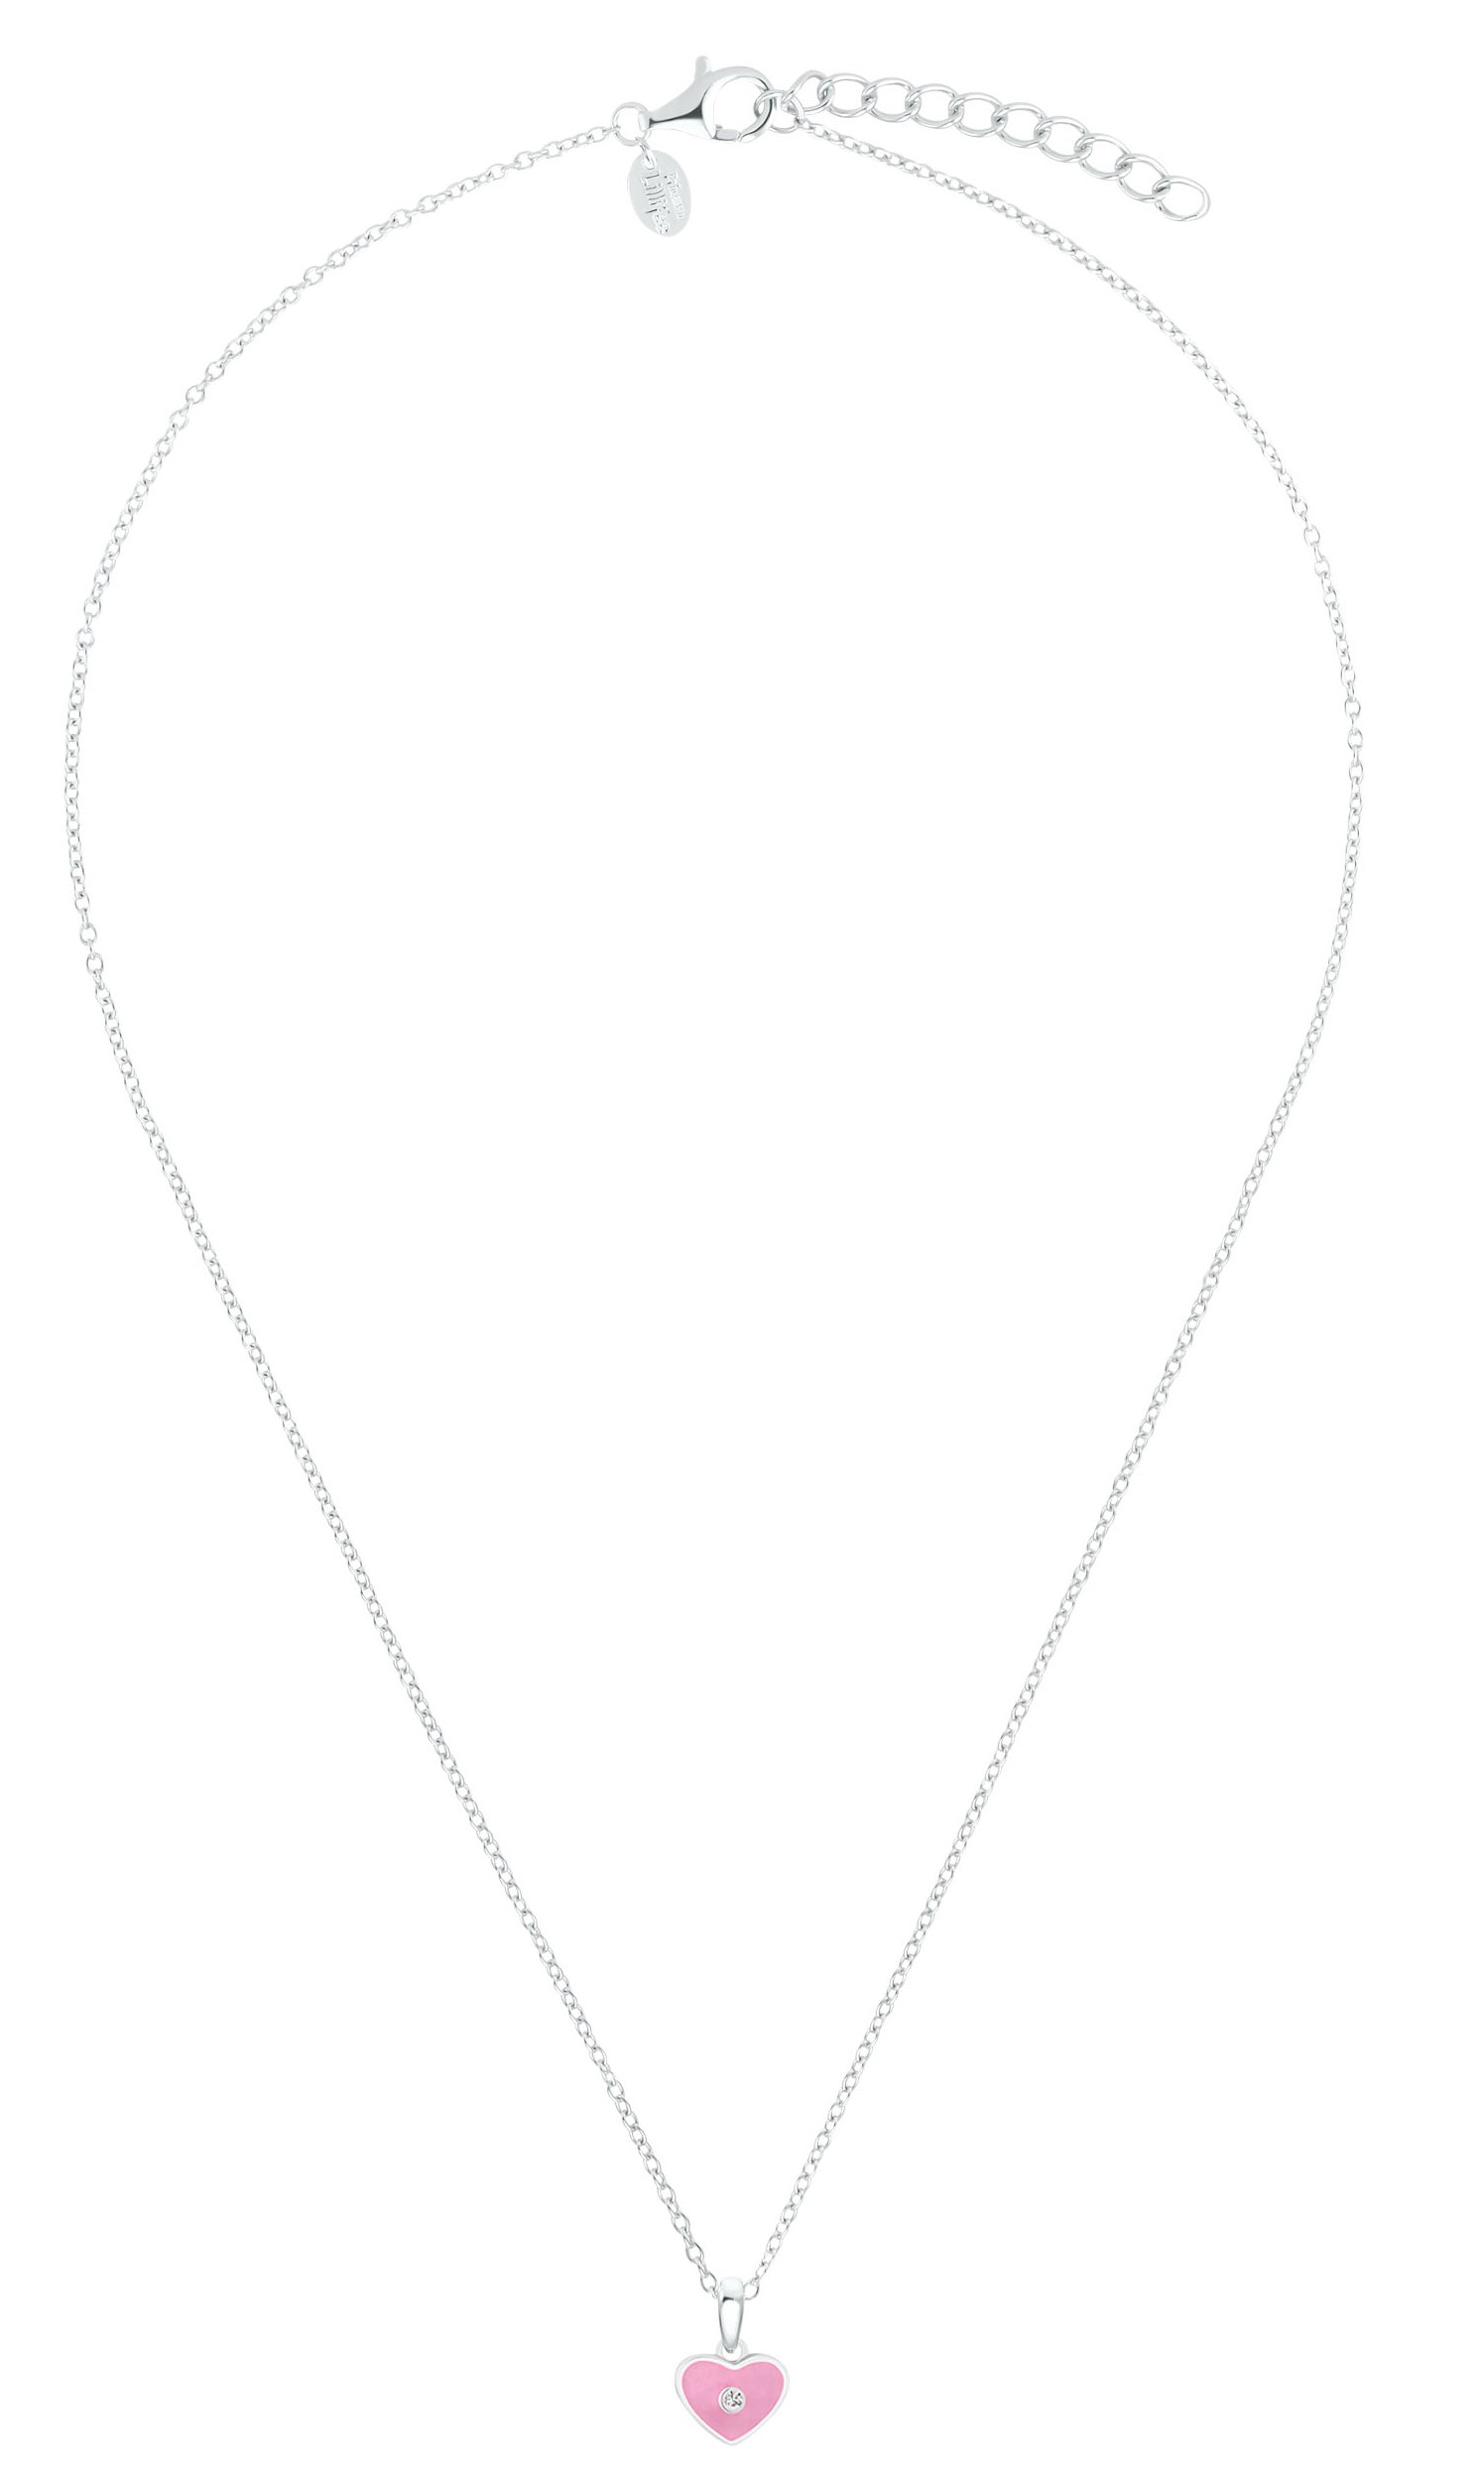 Lillifee Halskette 2035981 Silber 925/- mit Anhänger Herz rosa